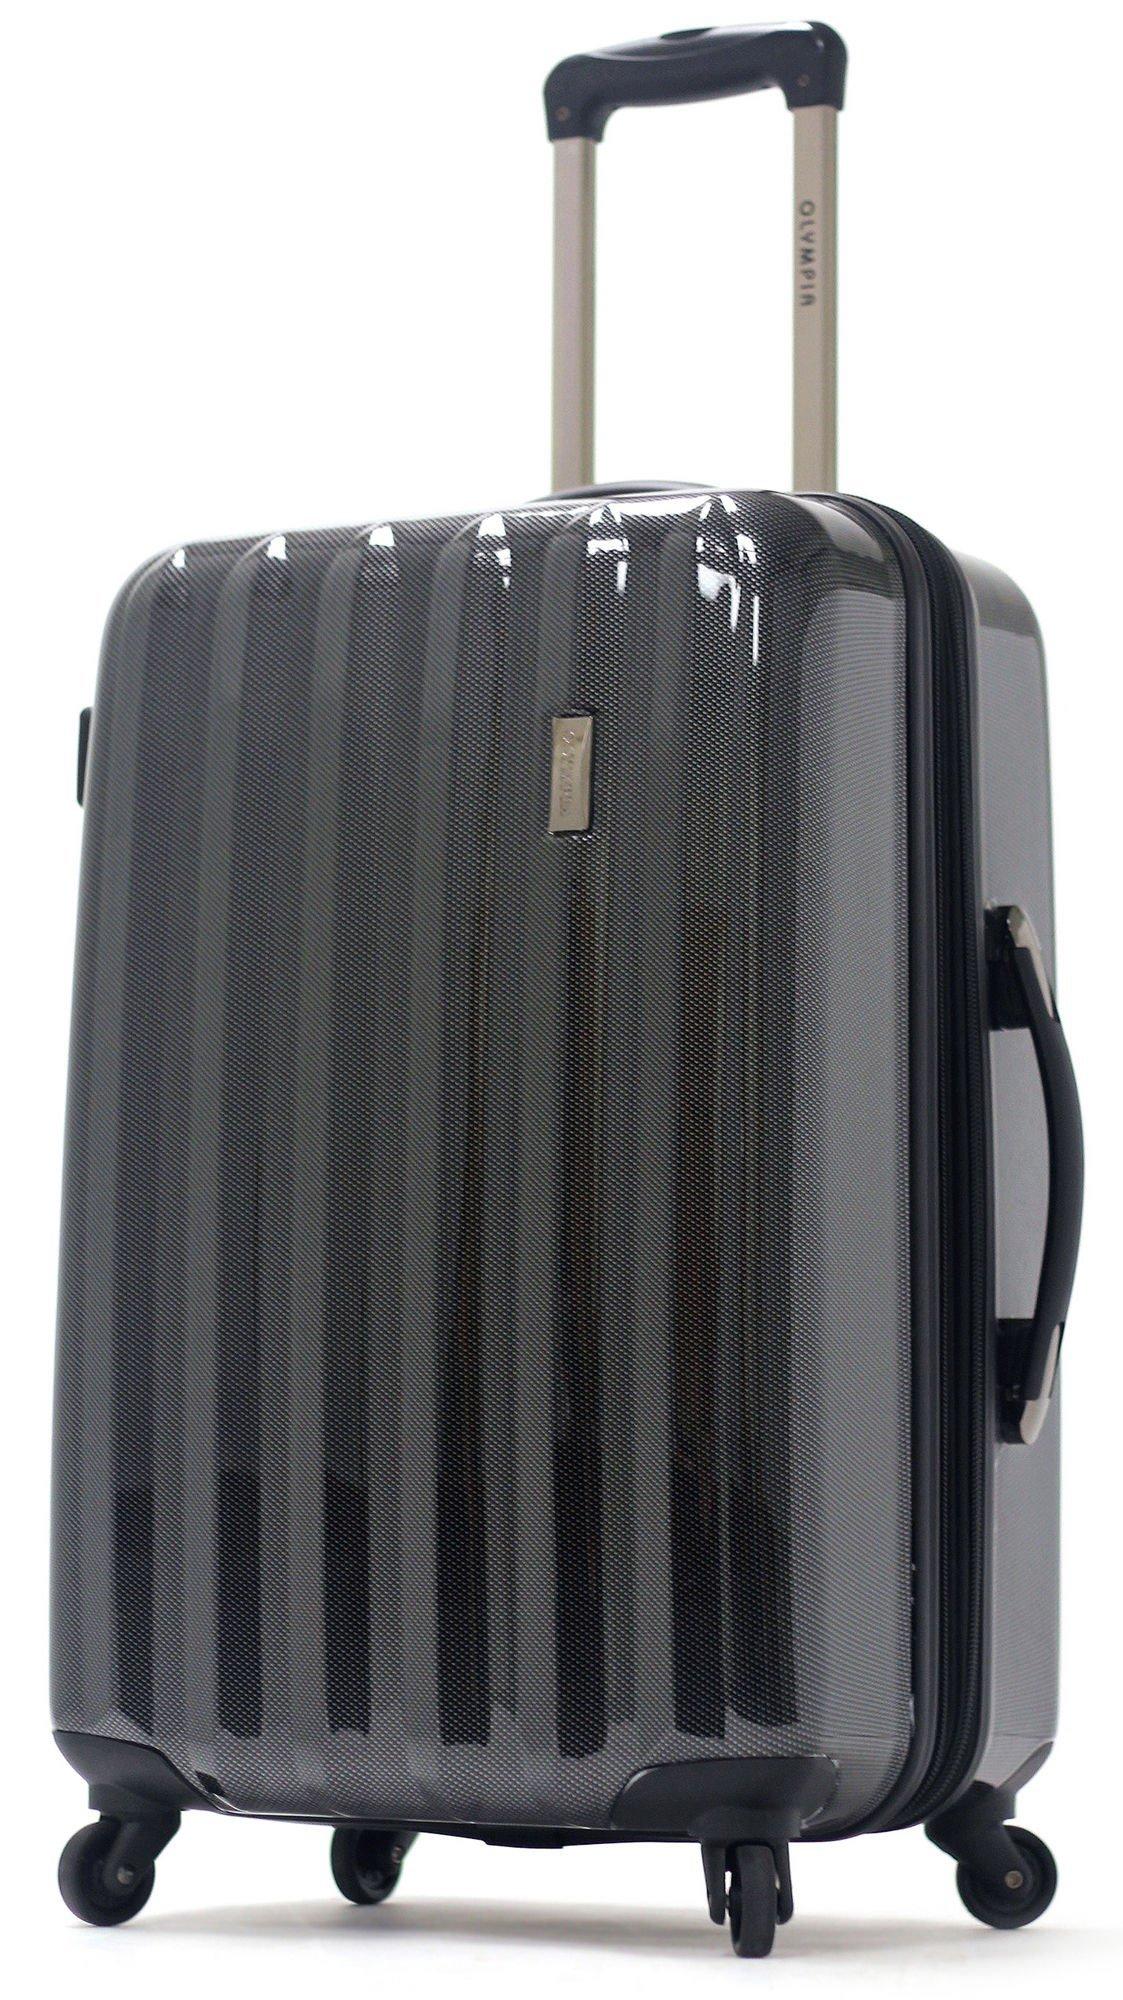 Olympia Luggage Titan 21'' Hardside Luggage